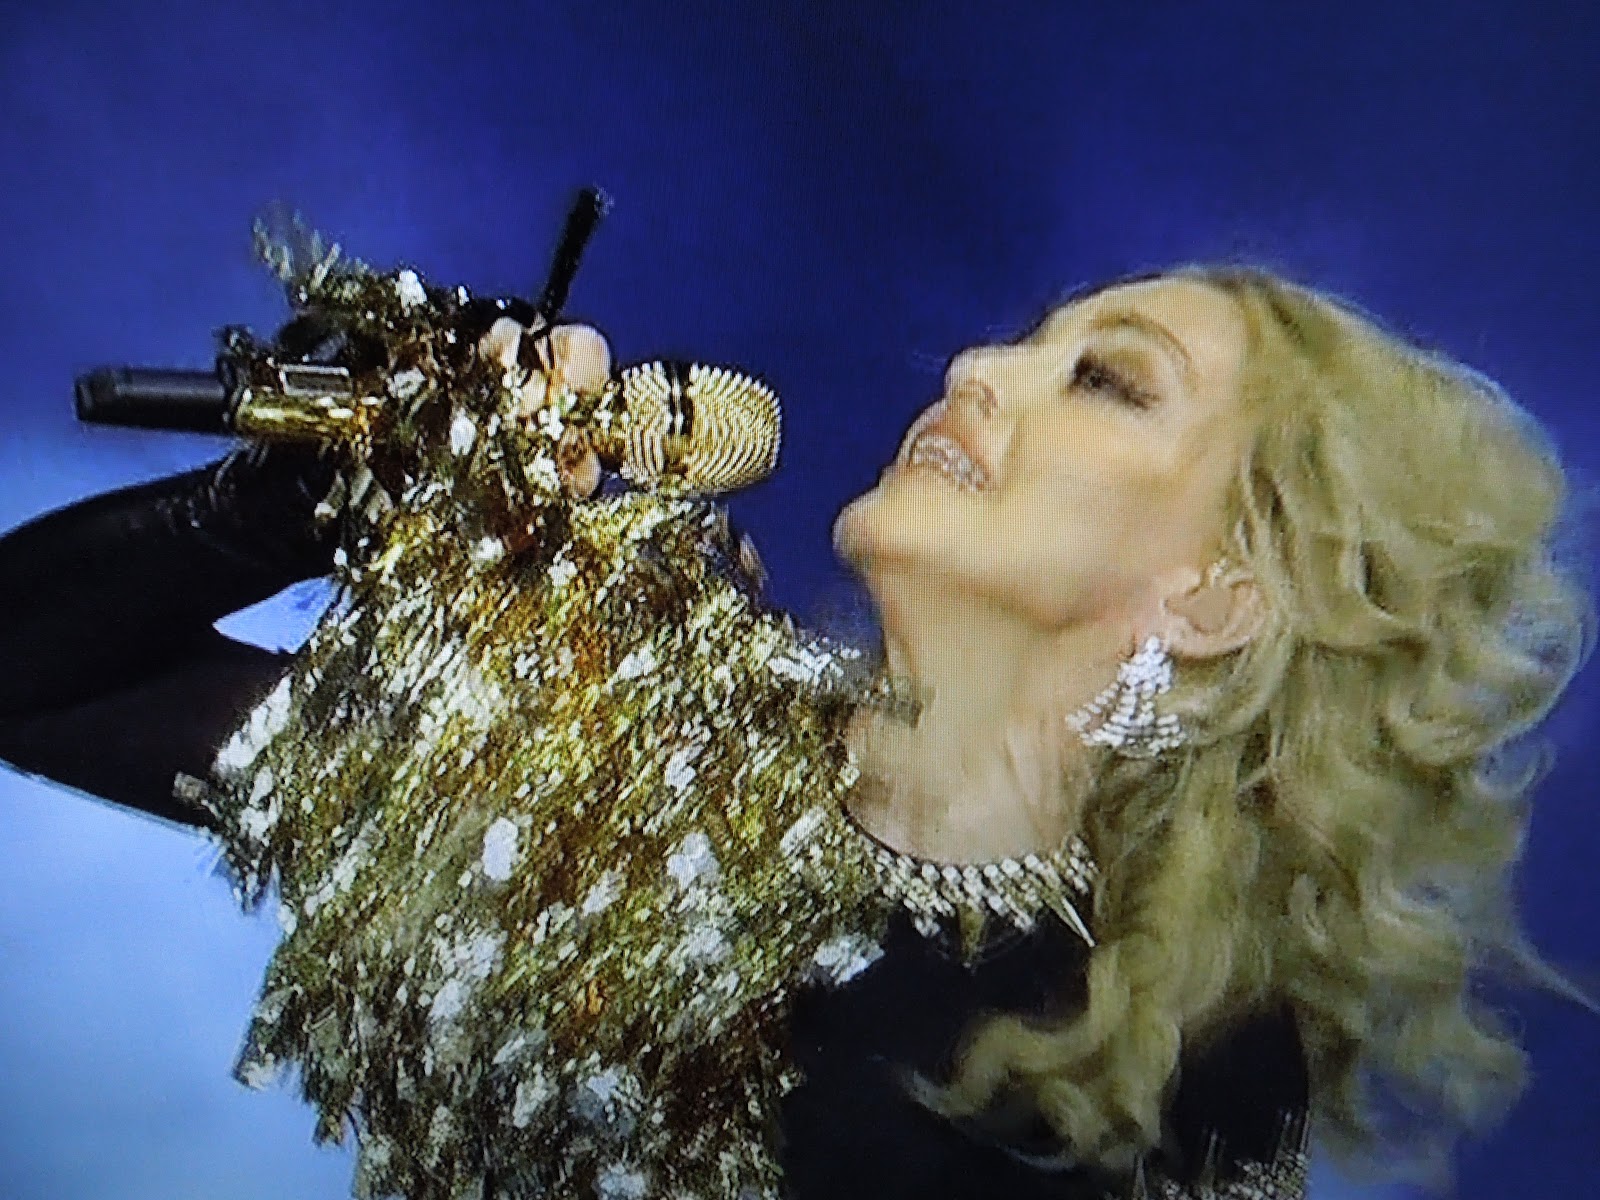 http://2.bp.blogspot.com/-CATN9RrZVTI/TzHxqwnveHI/AAAAAAAAKCQ/NYZcMcaVYG4/s1600/Madonna+Super+Bowl+042.JPG